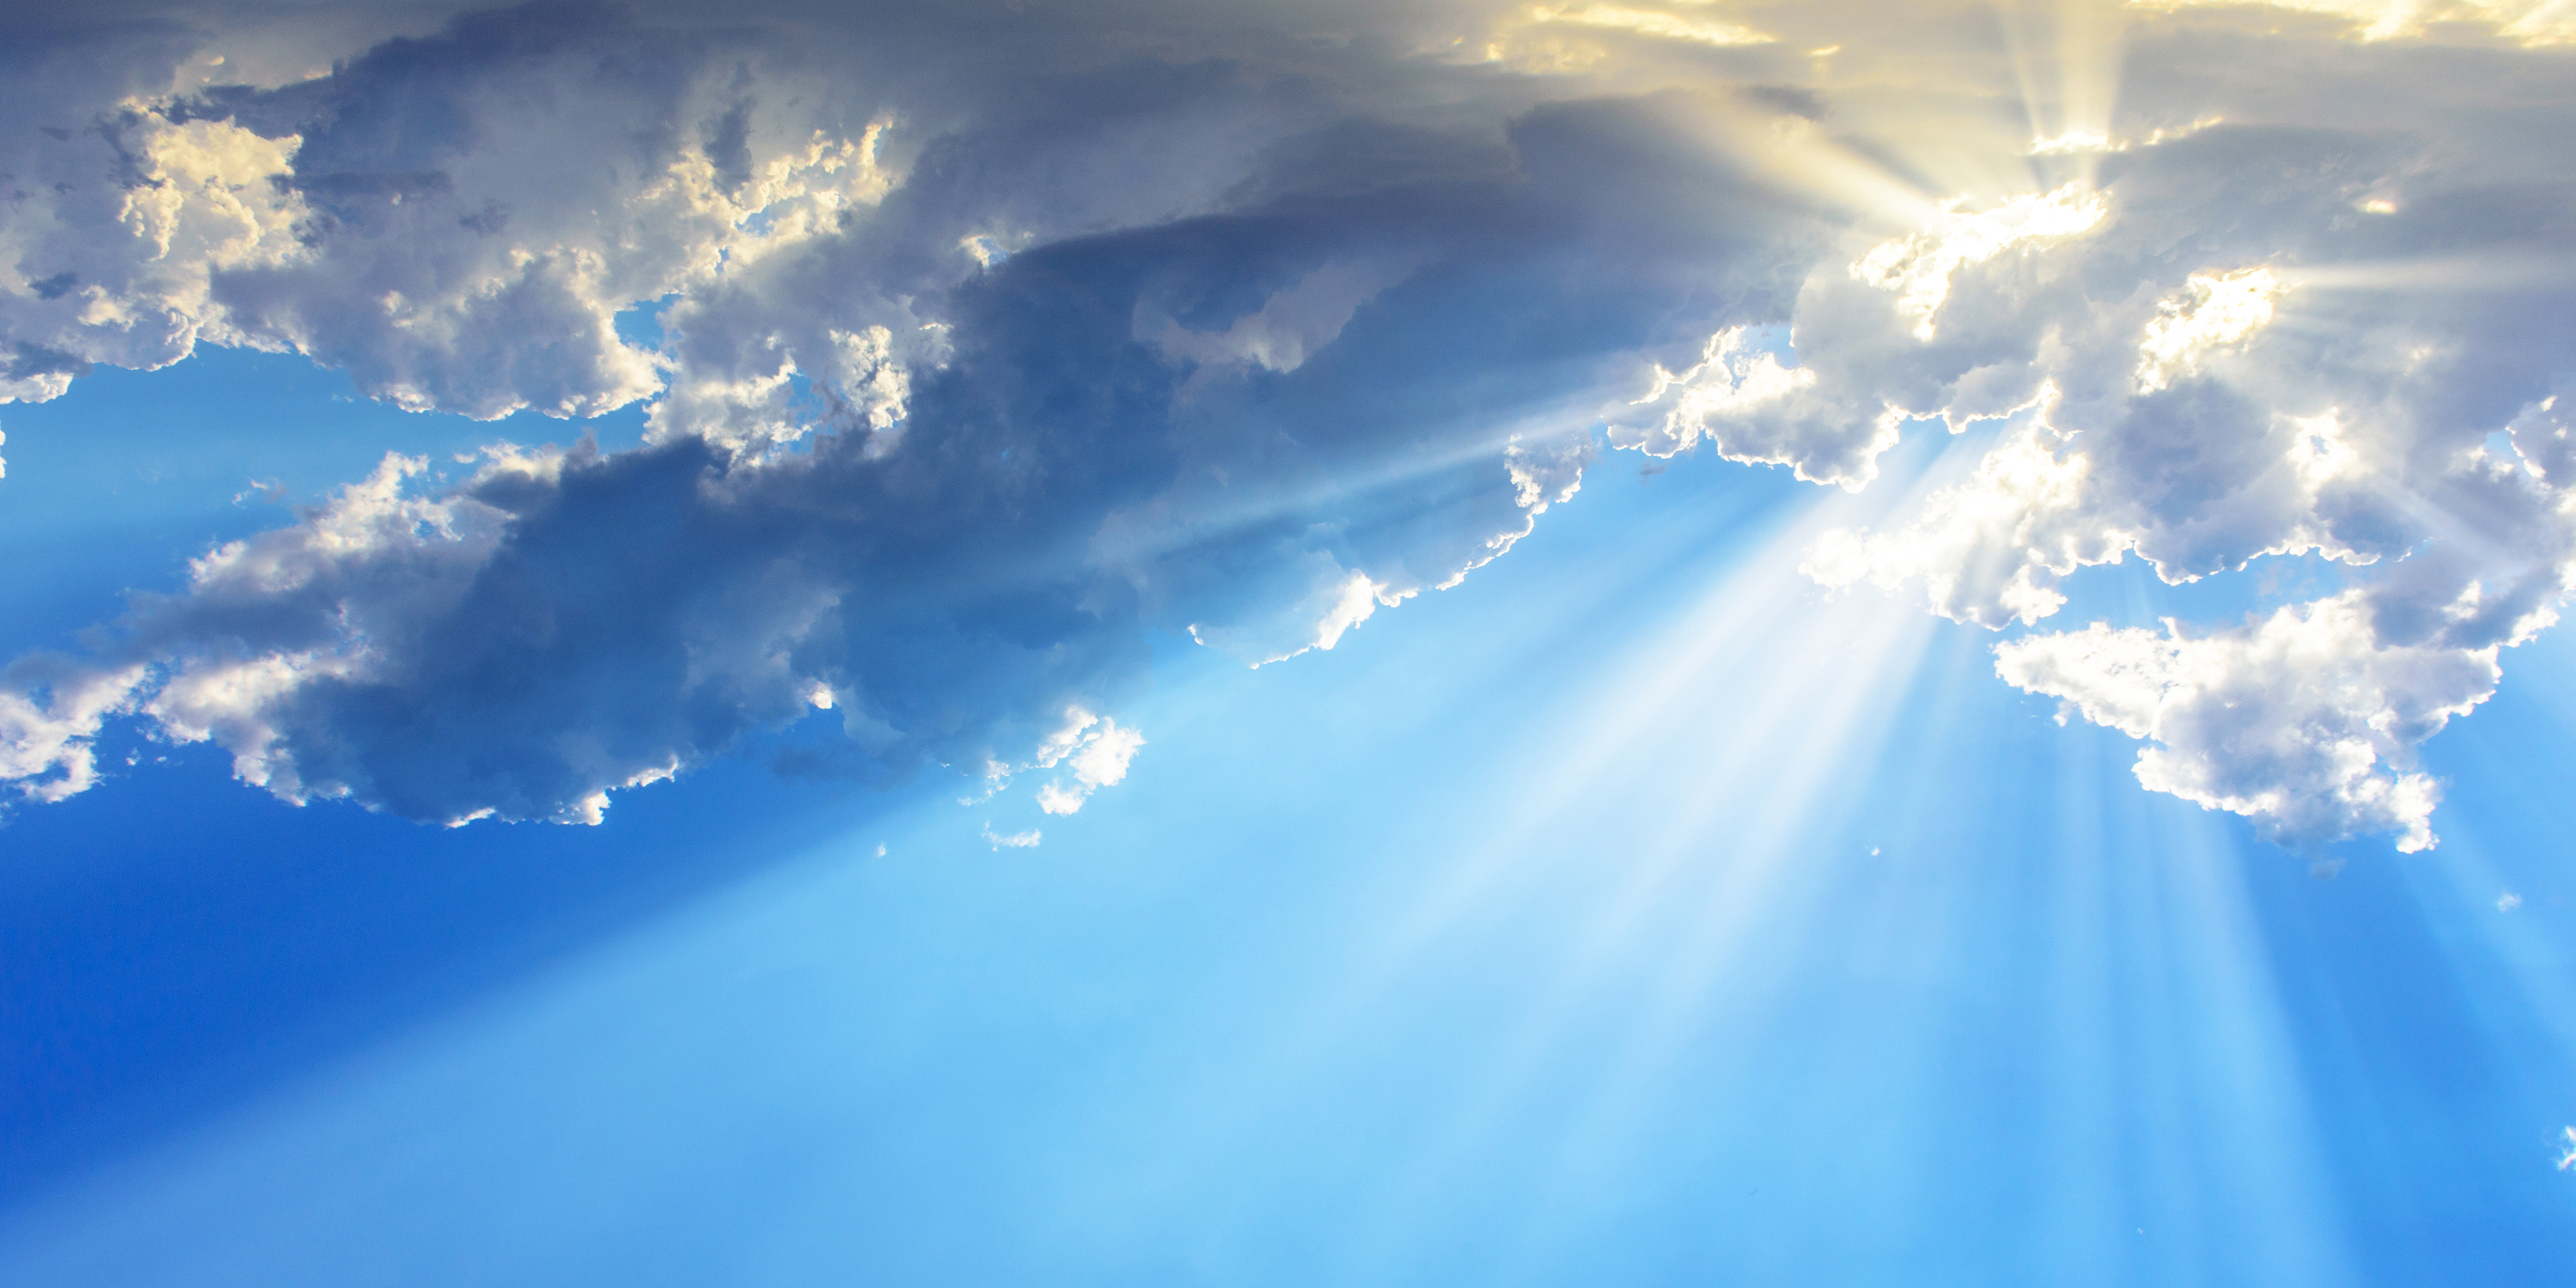 Le Ciel : Ultime récompense du chrétien ! Imaginez sa beauté ! - Page 8 Web3-sky-blue-ray-light-thoom-i-shutterstock